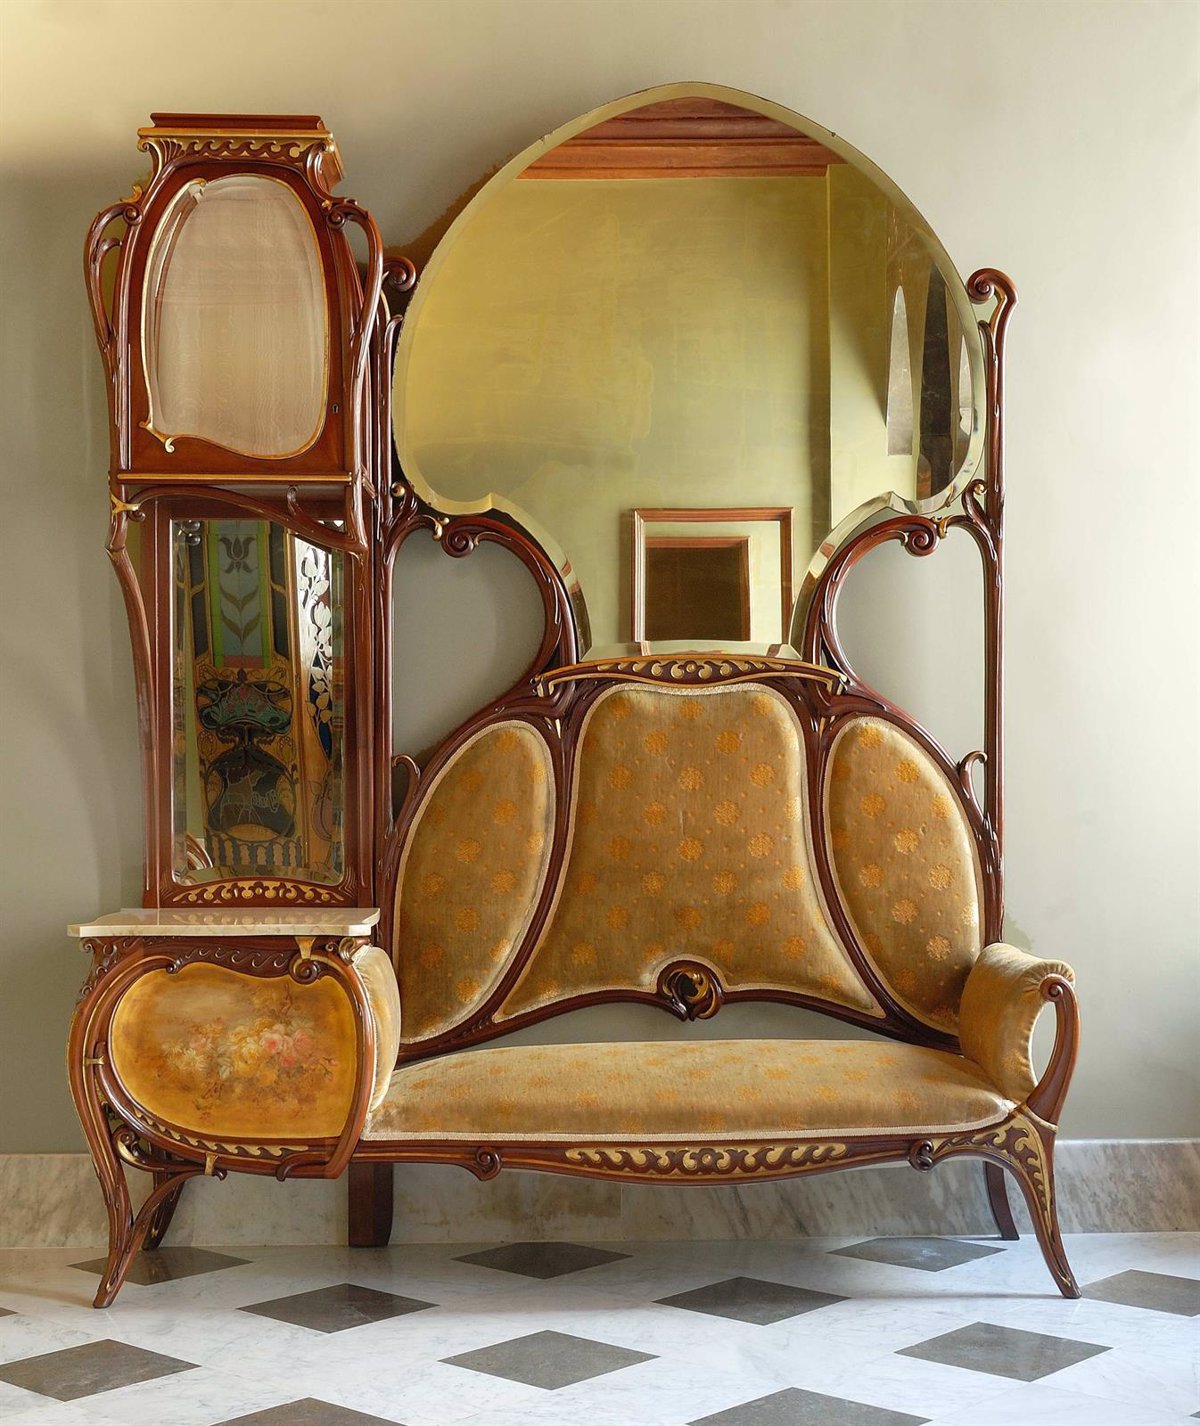 Ар нуво мебель Гауди 19 век